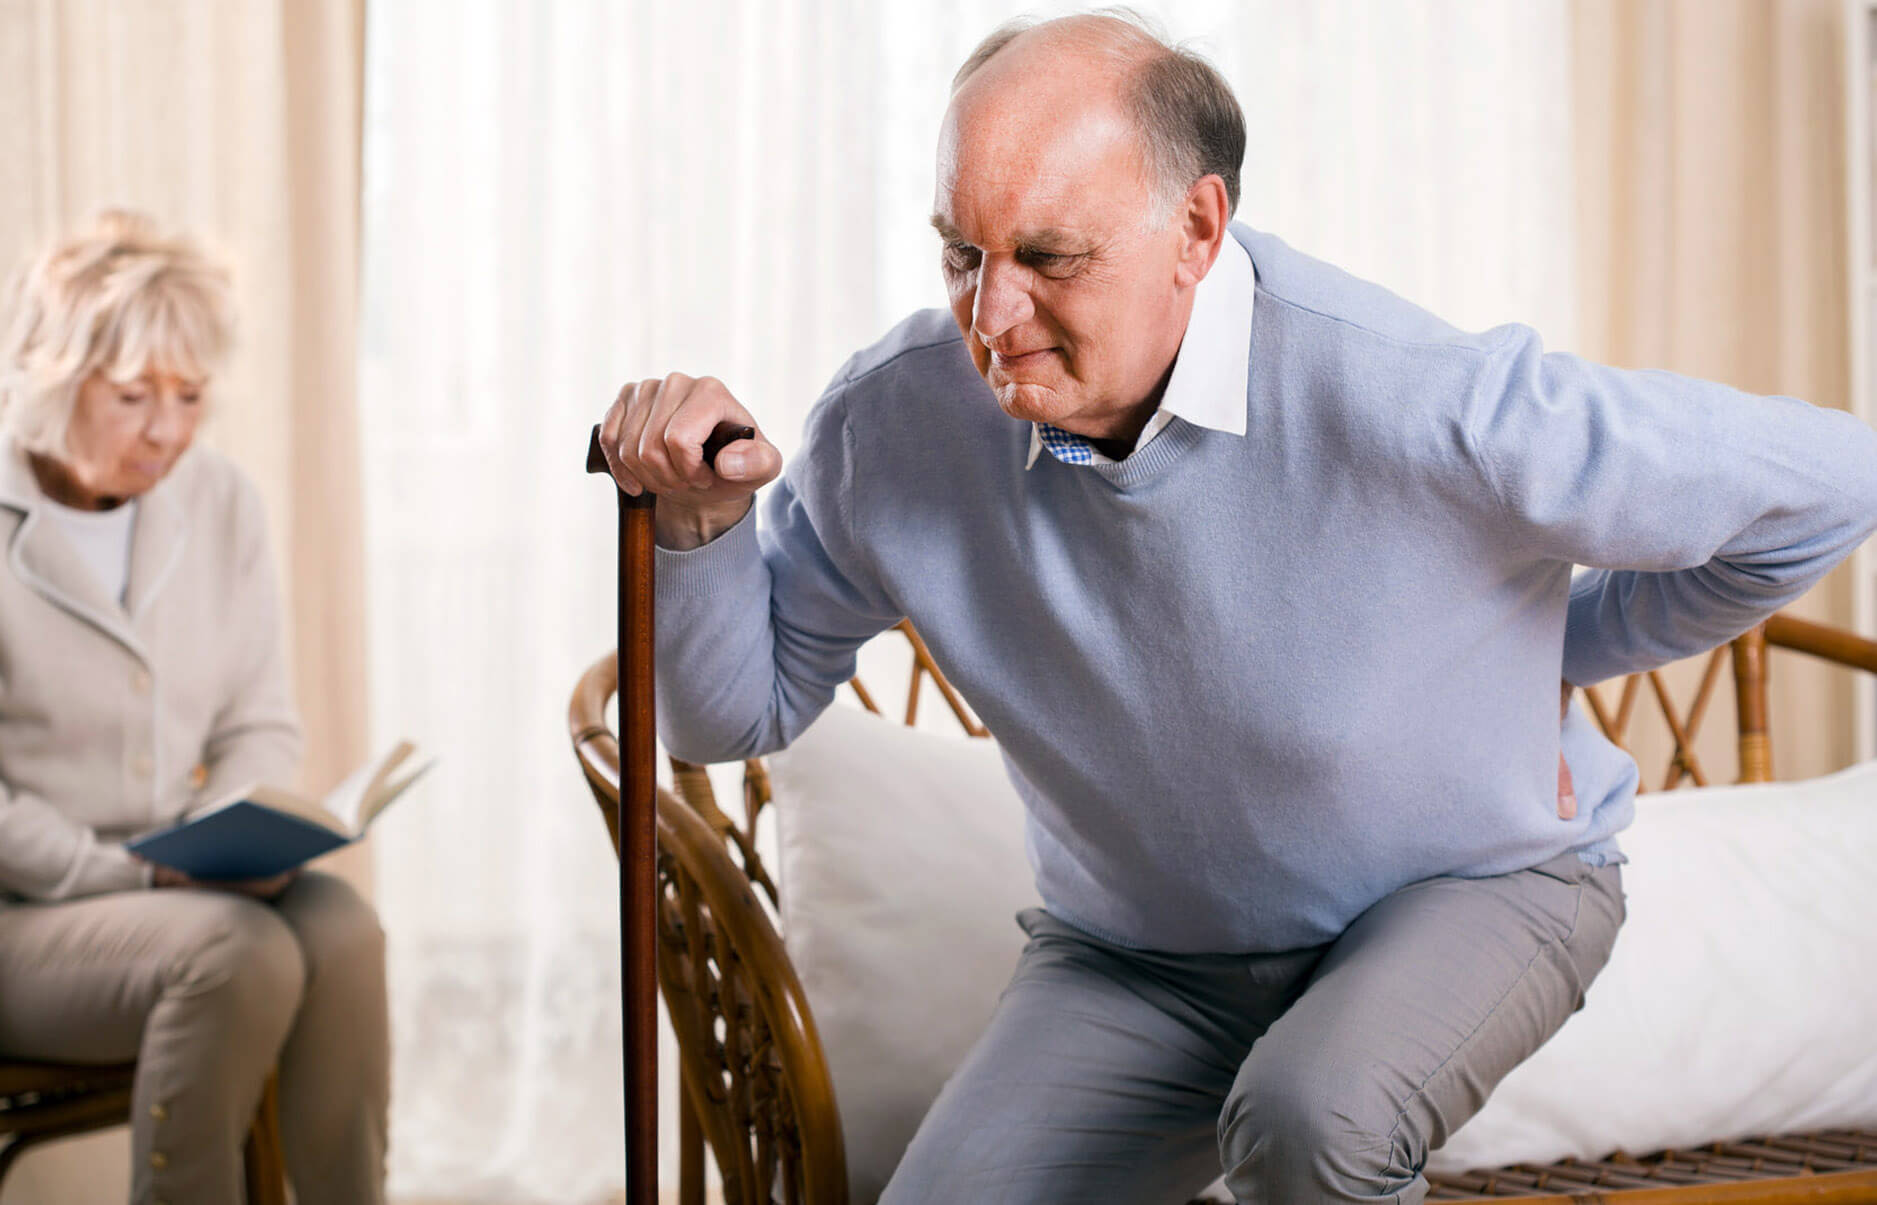 Дегенерация тазобедренного сустава - это болезнь пожилых людей, которая, как и остеопороз, развивается скрытно